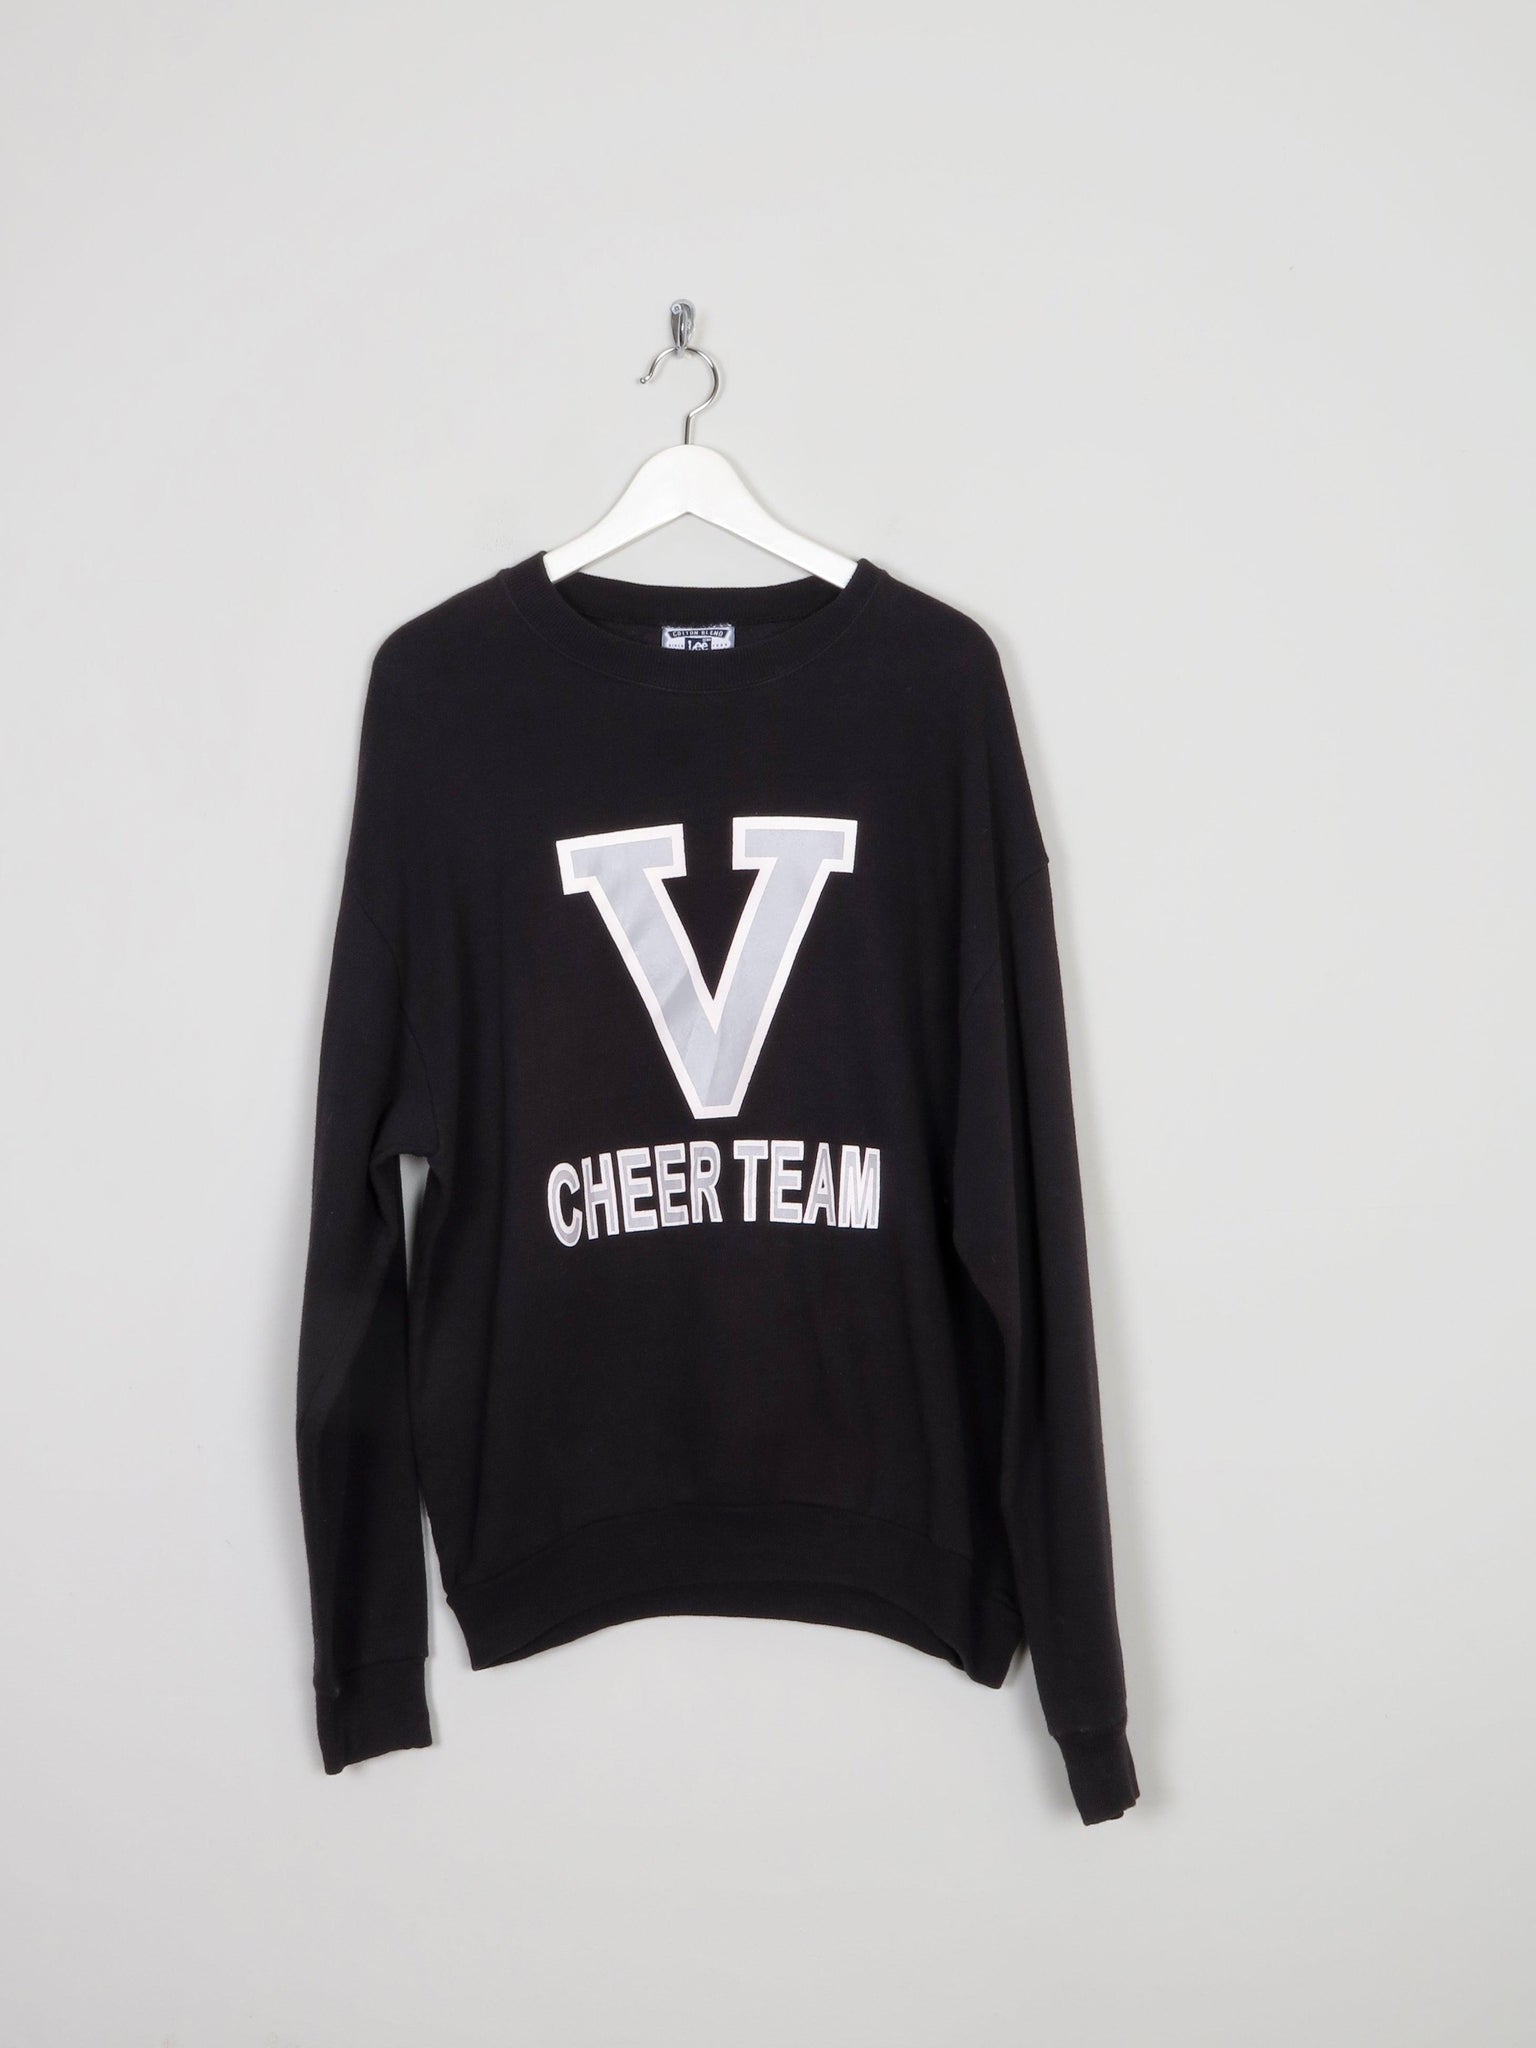 Women's Lee Cheer Team Black Vintage Sweatshirt L - The Harlequin